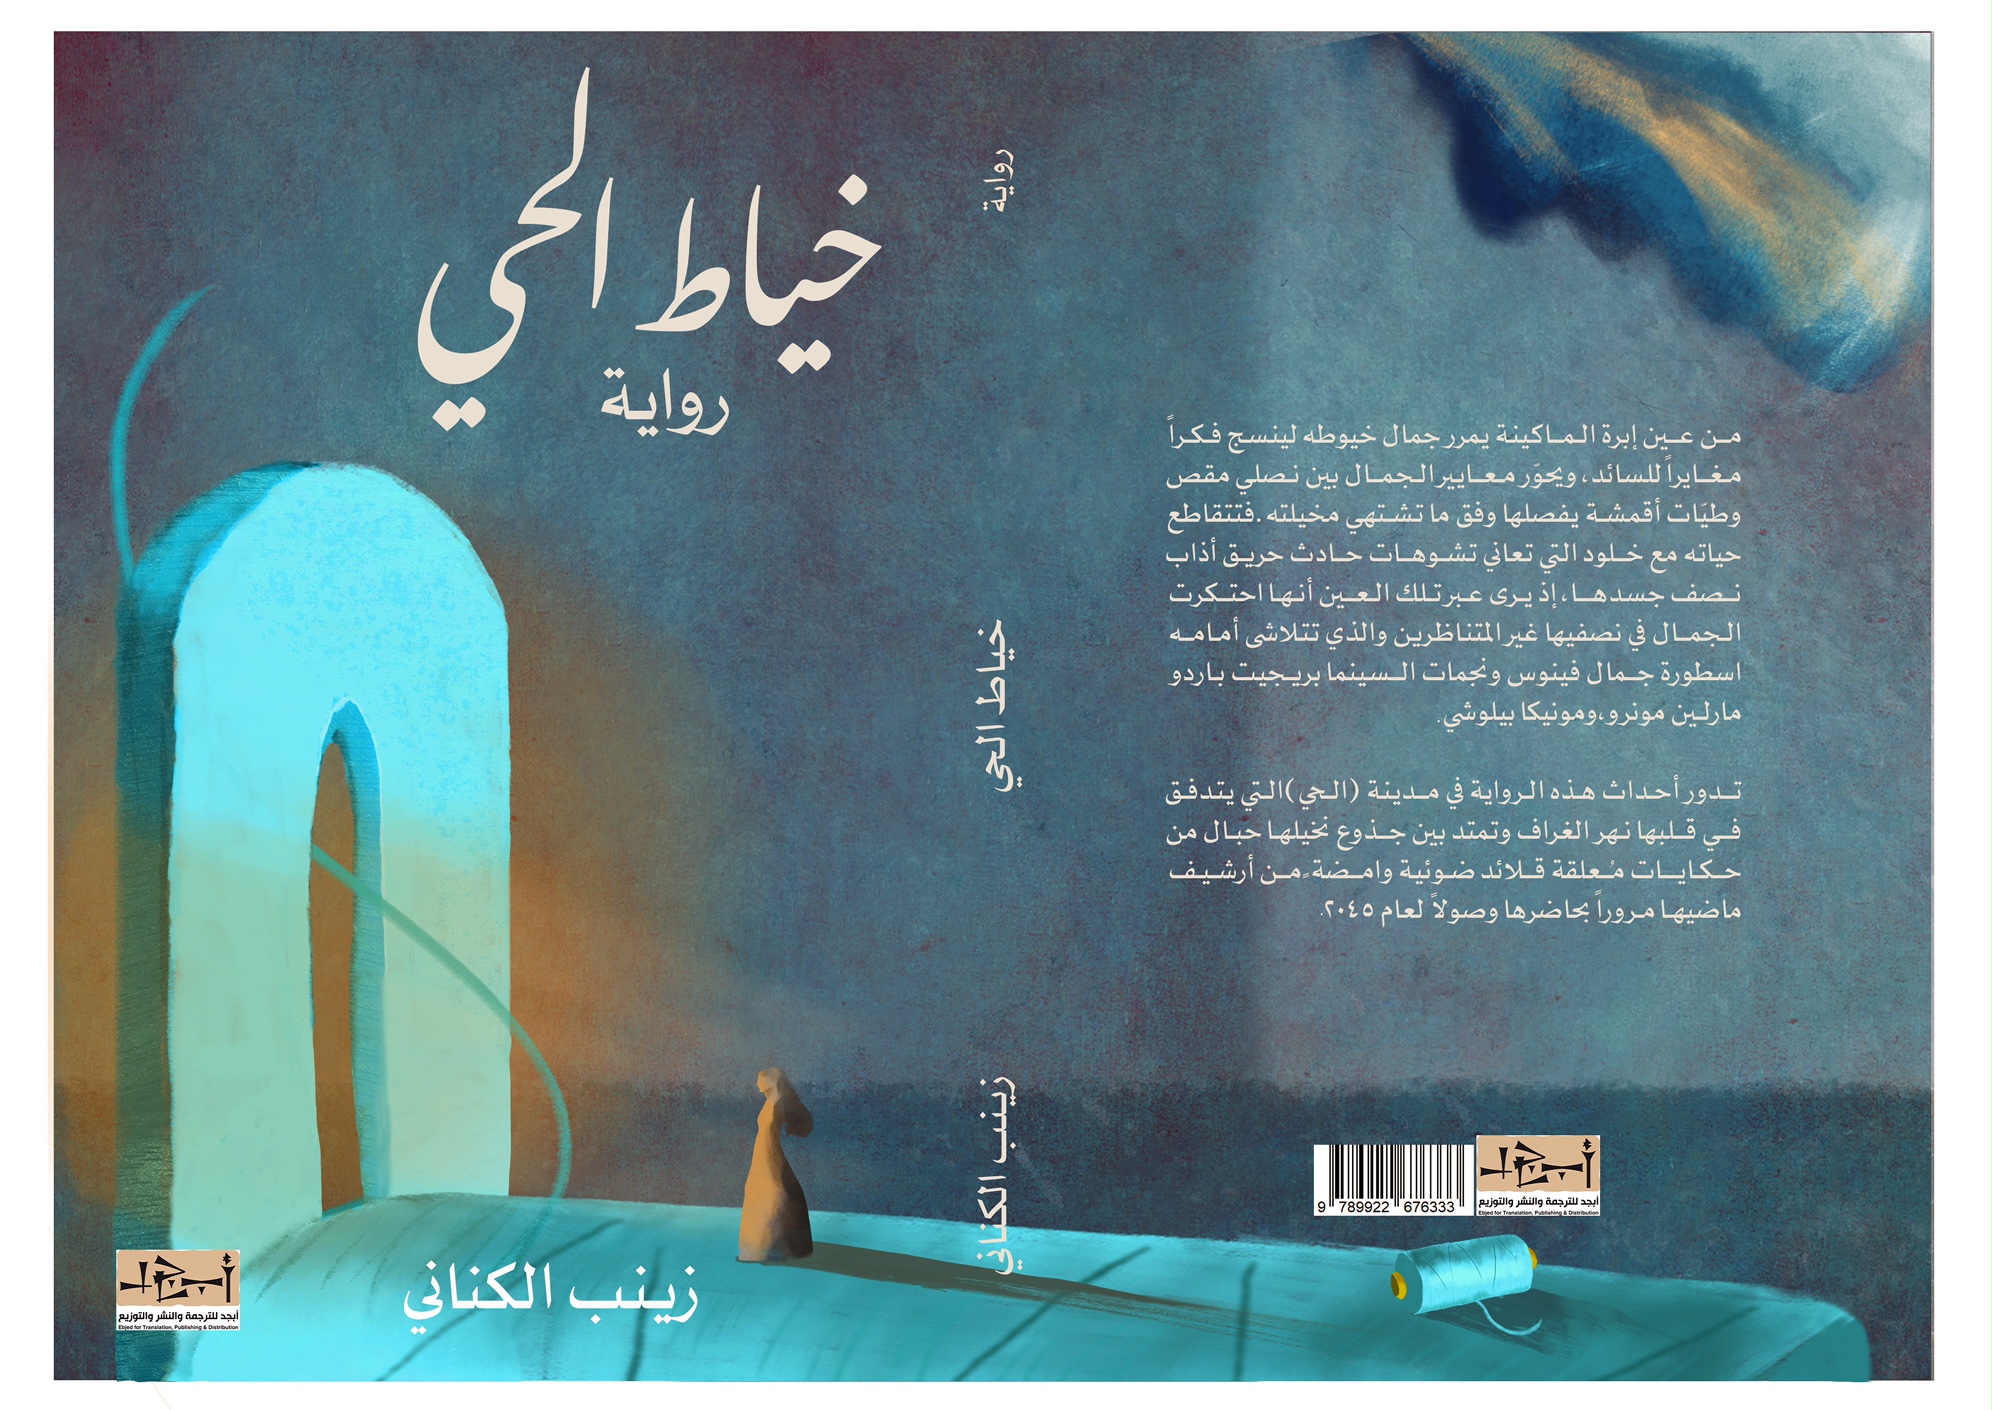 اسم الكتاب: خيّاط الحي تأليف: زينب الكناني 